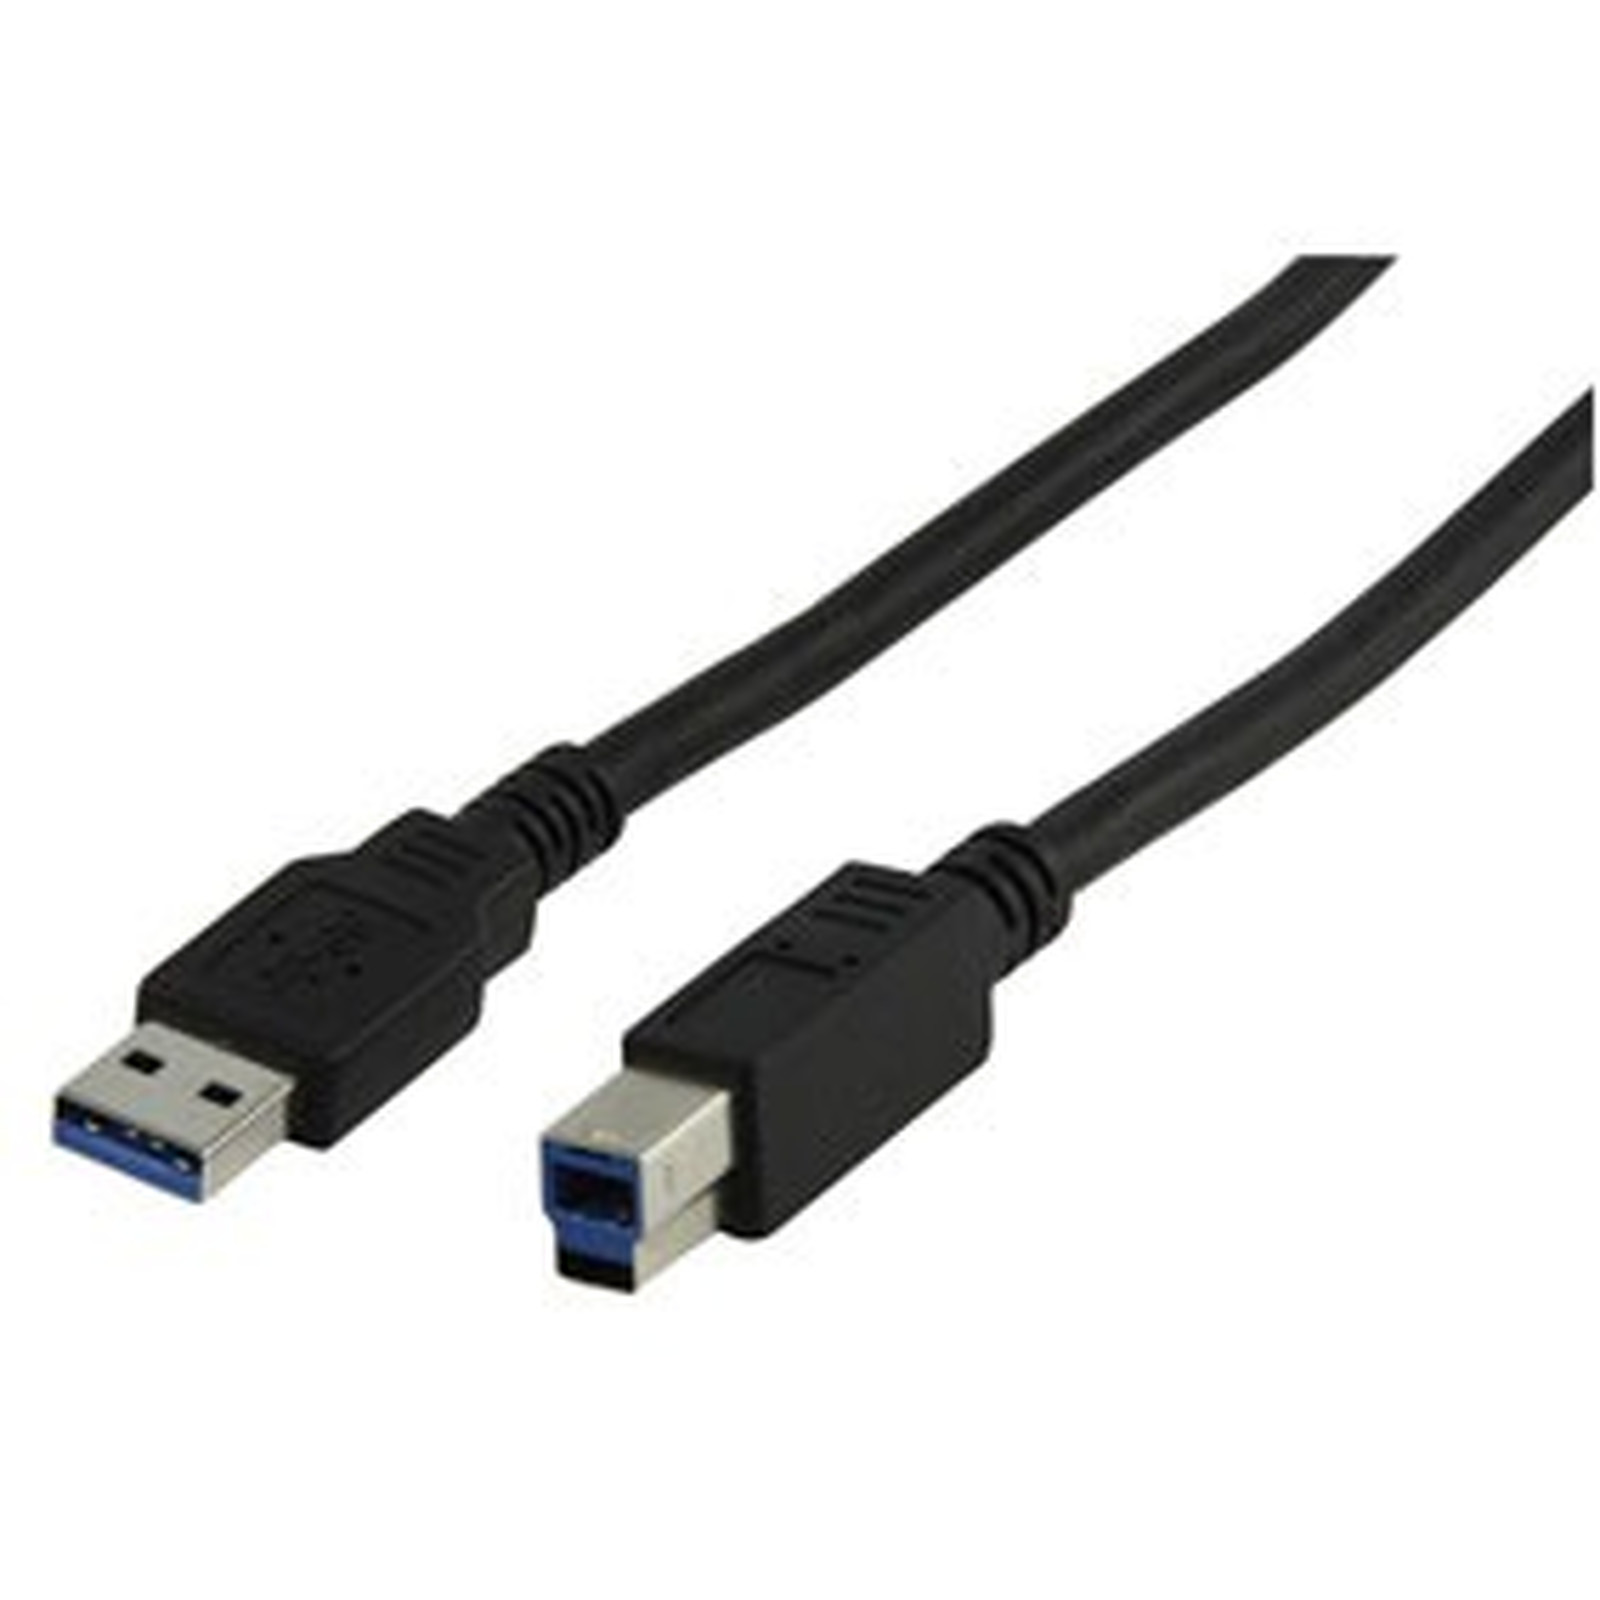 Cable USB 3.0 Type AB (Male/Male) - 3 m - USB Generique